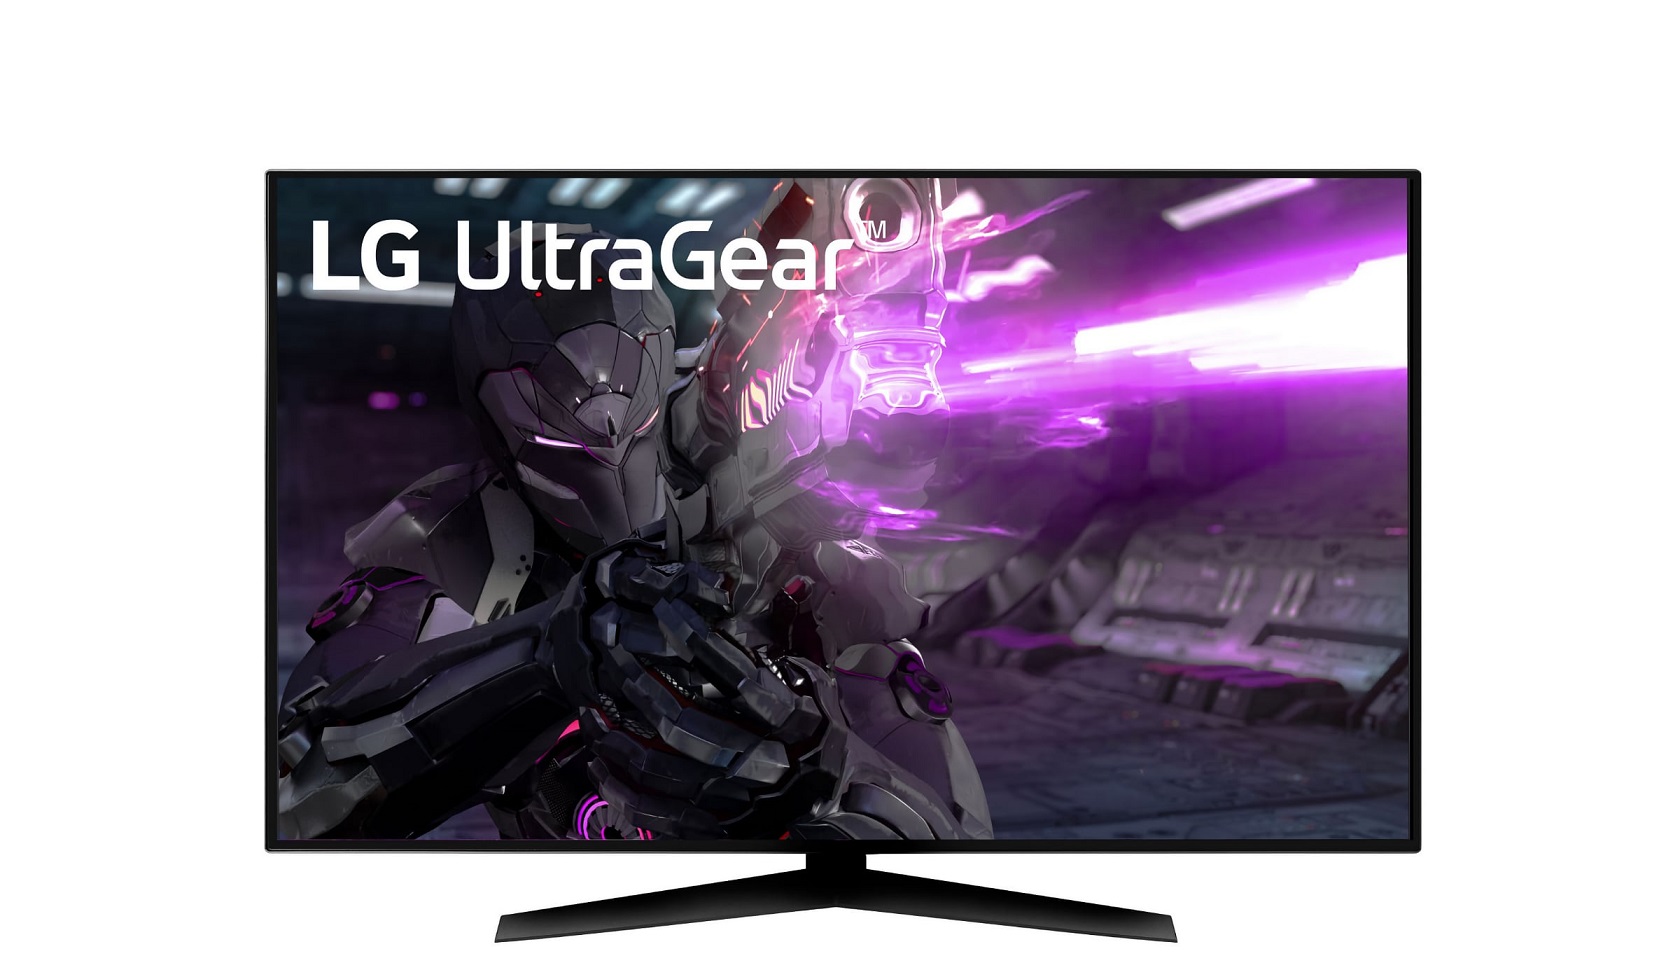 الجی مانیتور گیمینگ غول پیکر UltraGear 48GQ900 را معرفی کرد